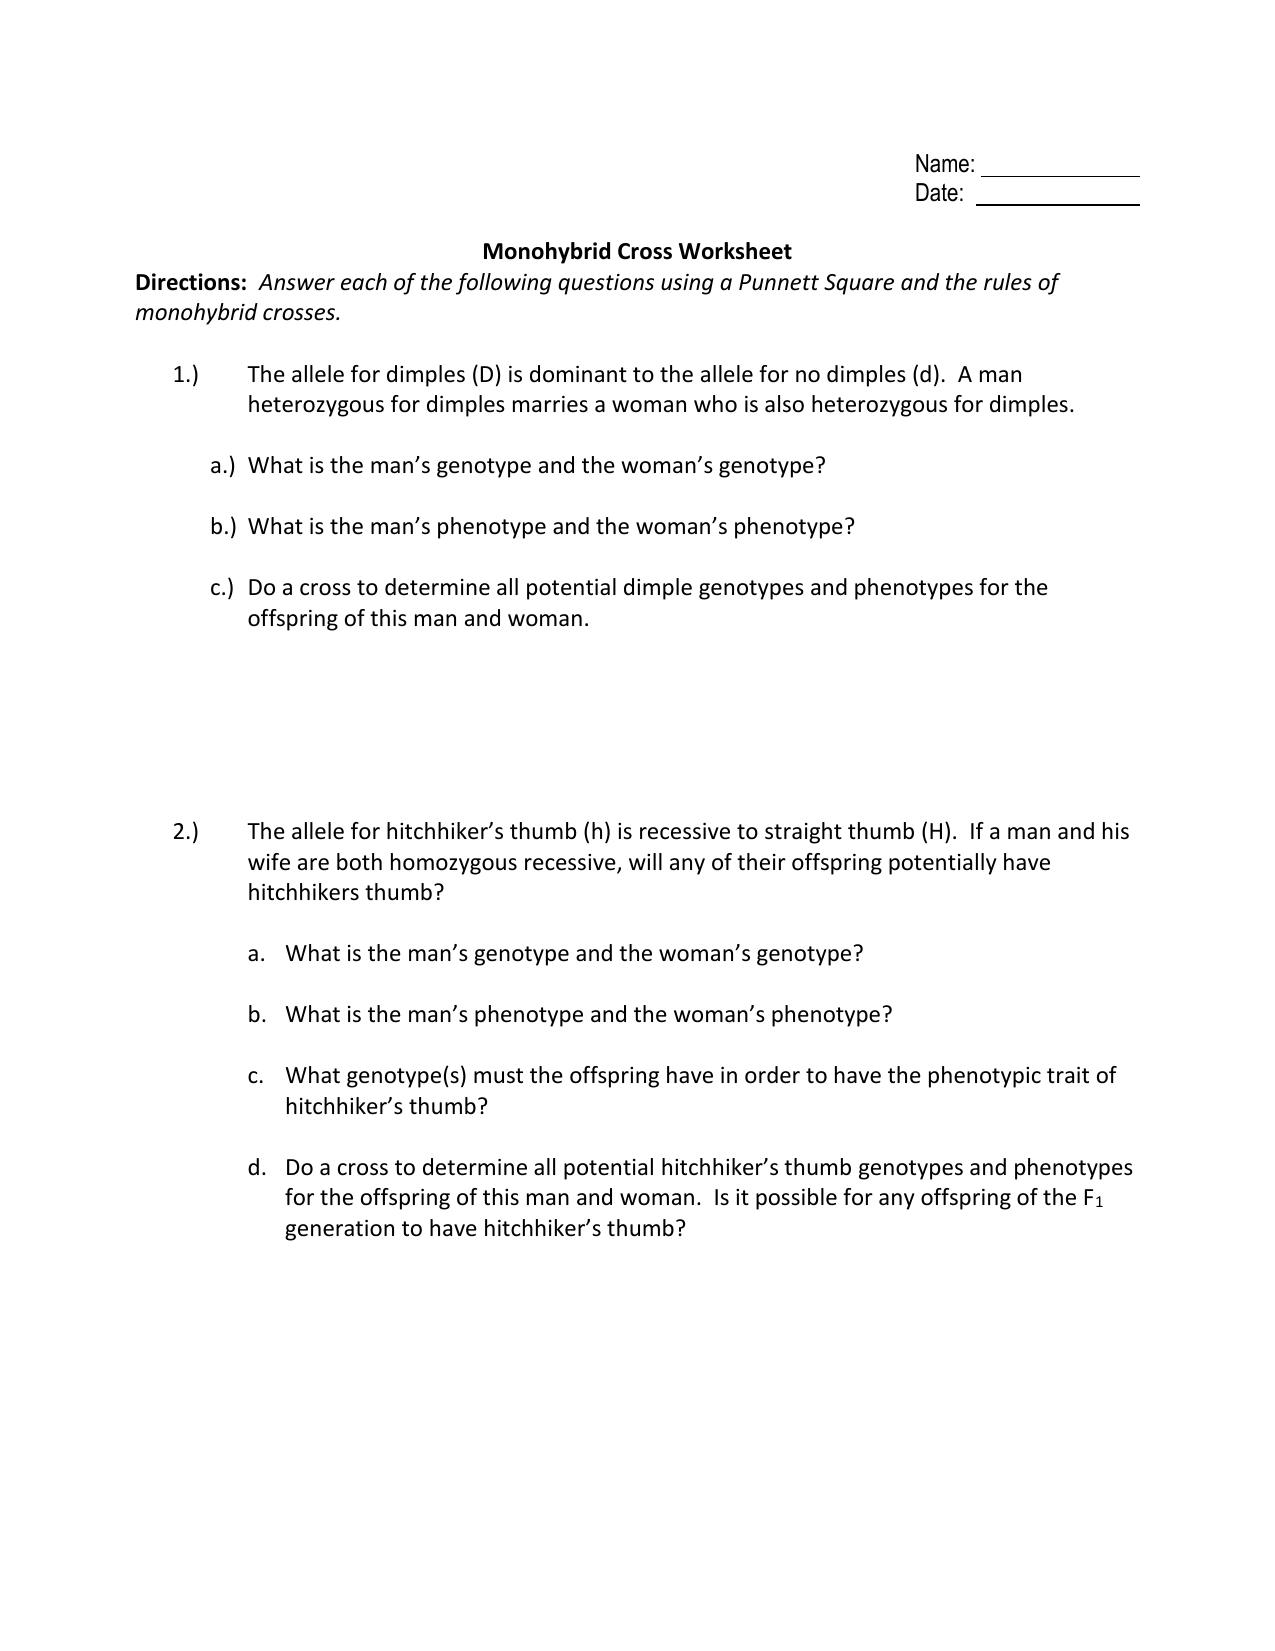 Monohybrid Cross Worksheet Intended For Monohybrid Crosses Worksheet Answers